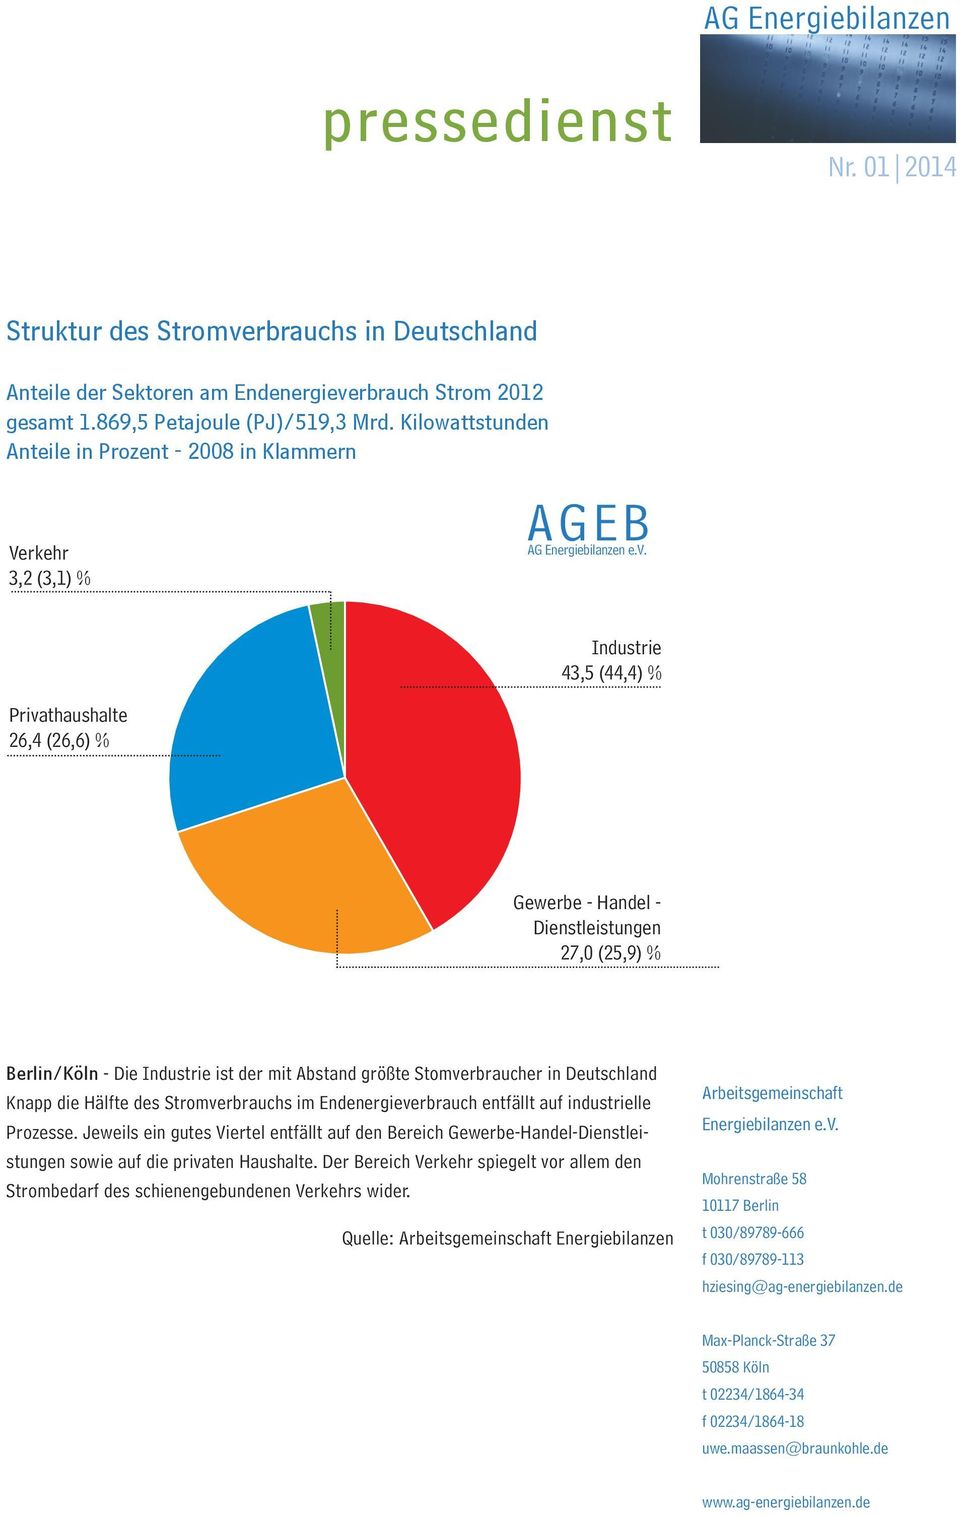 Berlin/Köln - Die Industrie ist der mit Abstand größte Stomverbraucher in Deutschland Knapp die Hälfte des Stromverbrauchs im Endenergieverbrauch entfällt auf industrielle Prozesse.